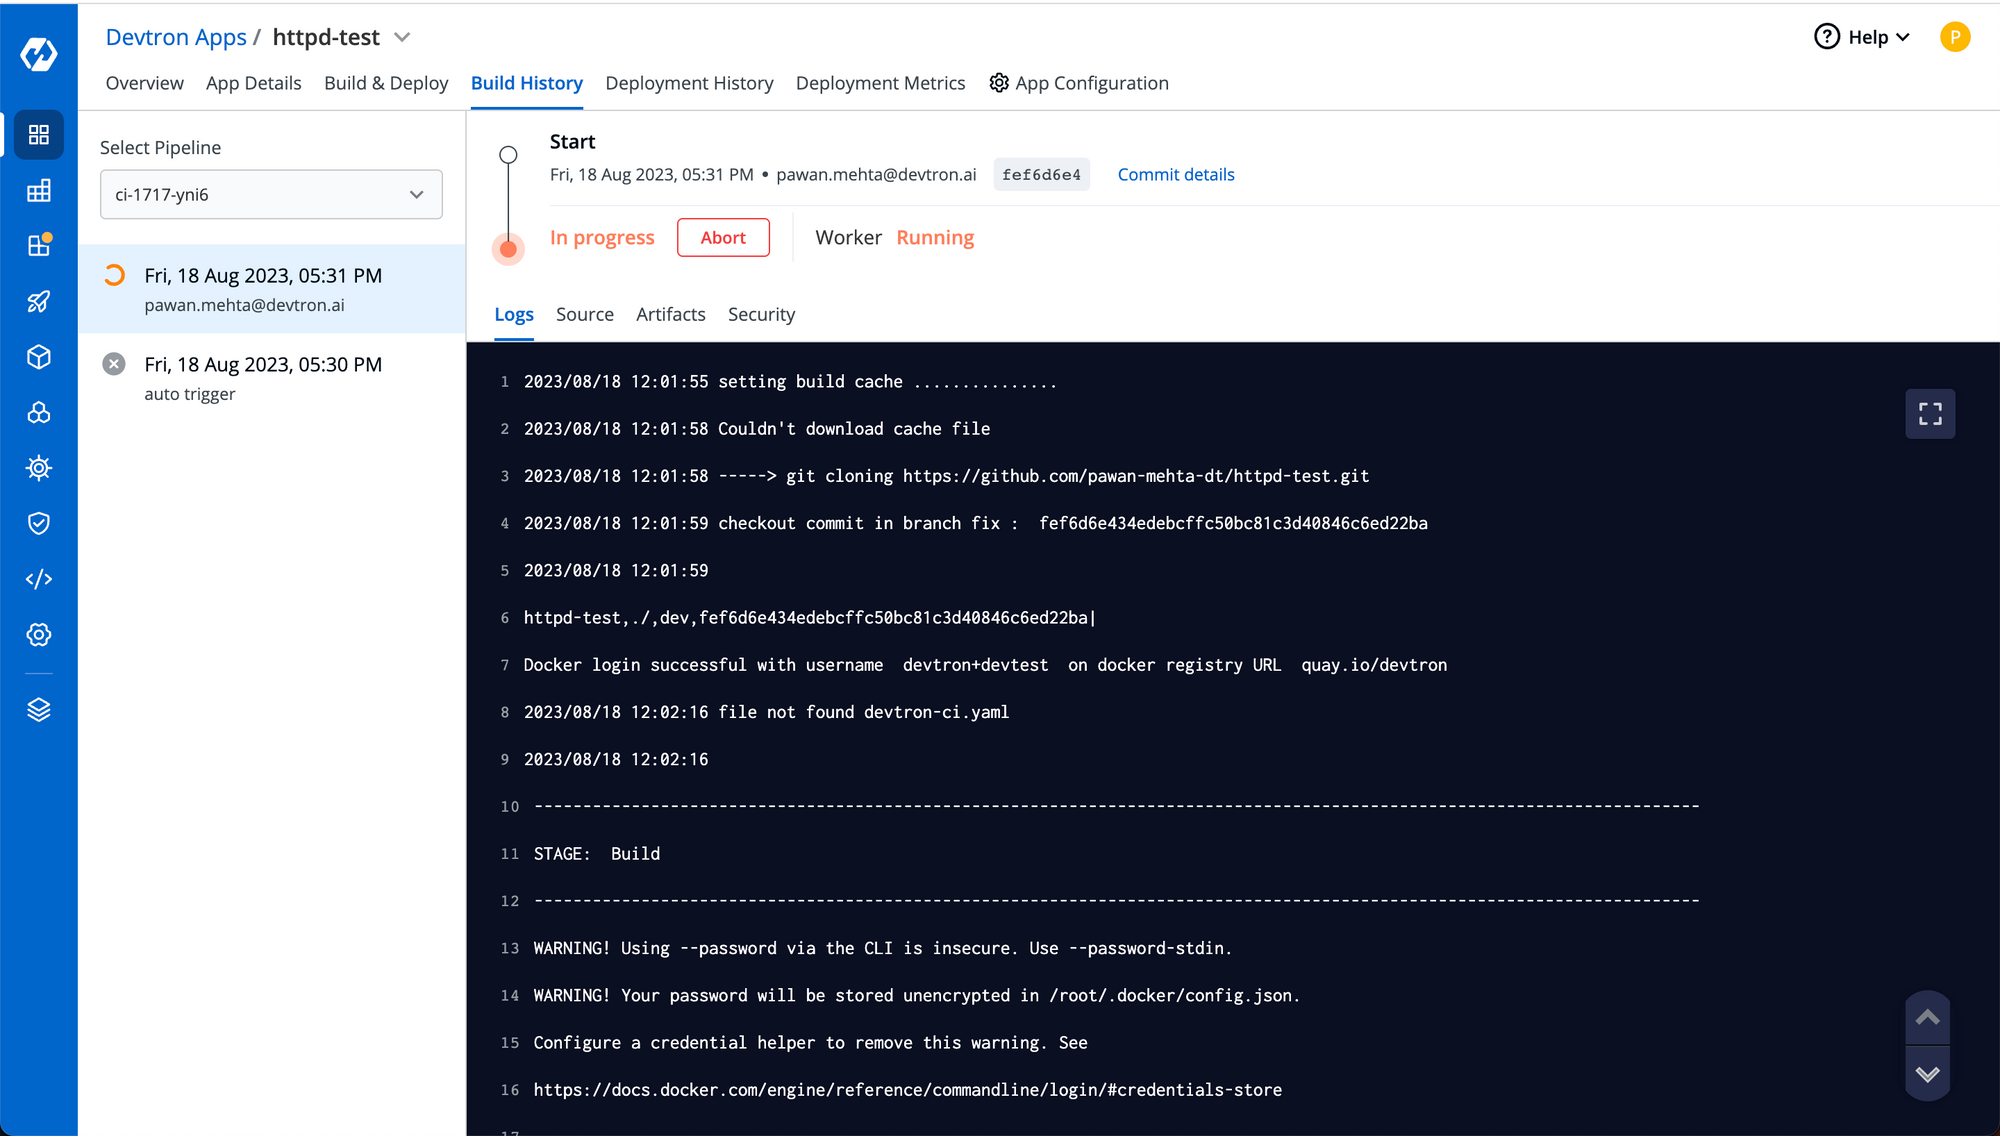 Build showing live logs on devtron UI